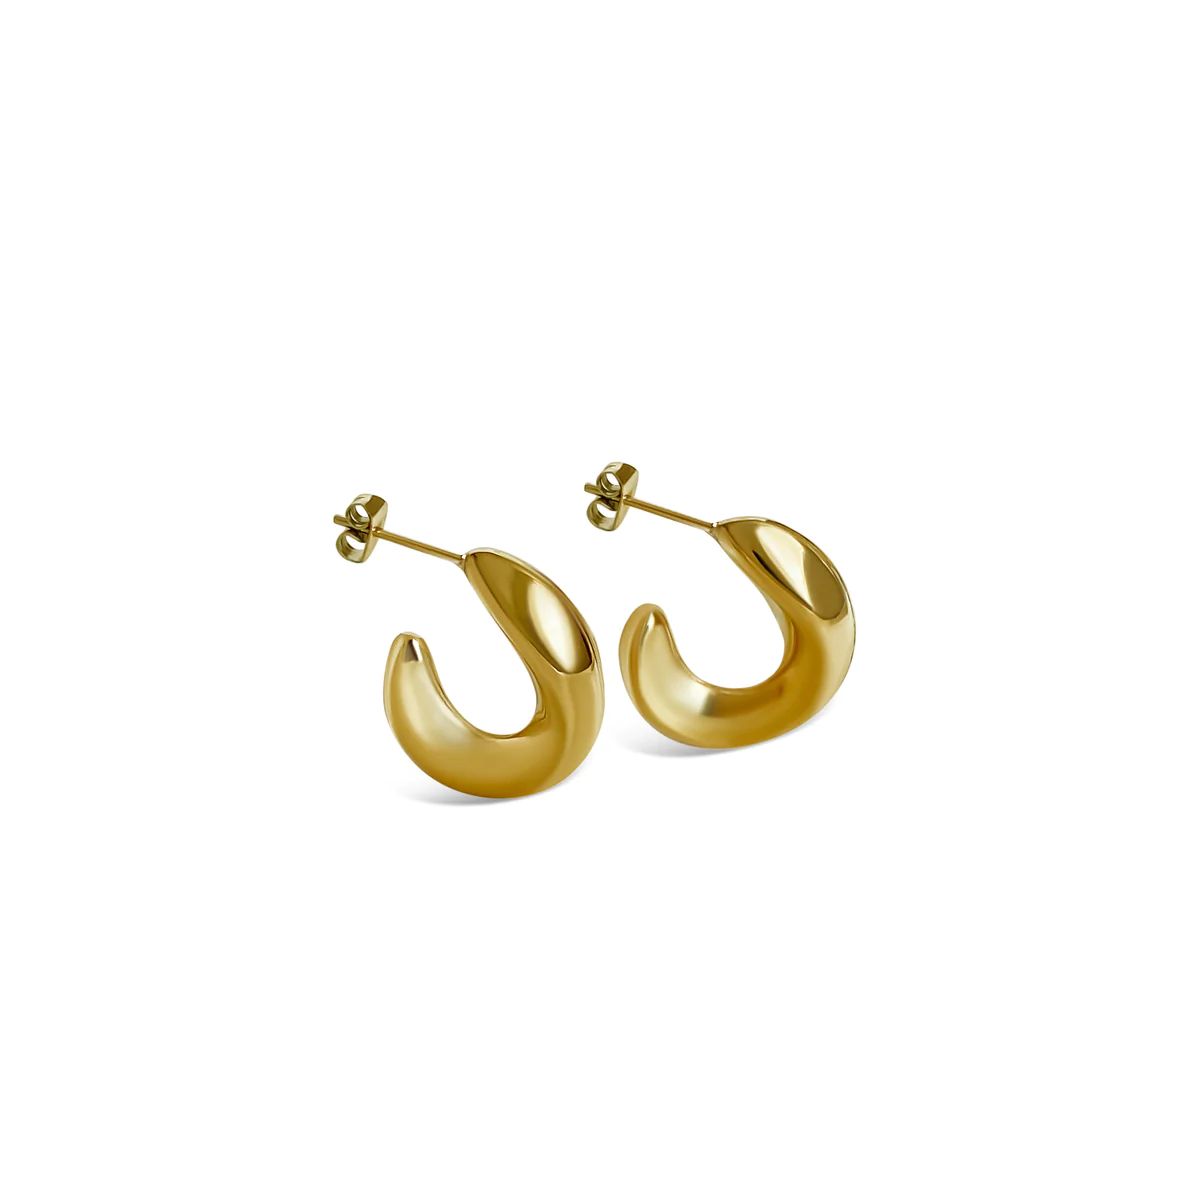 The Gold Juliet Curved Hoop Earrings | Anisa Sojka